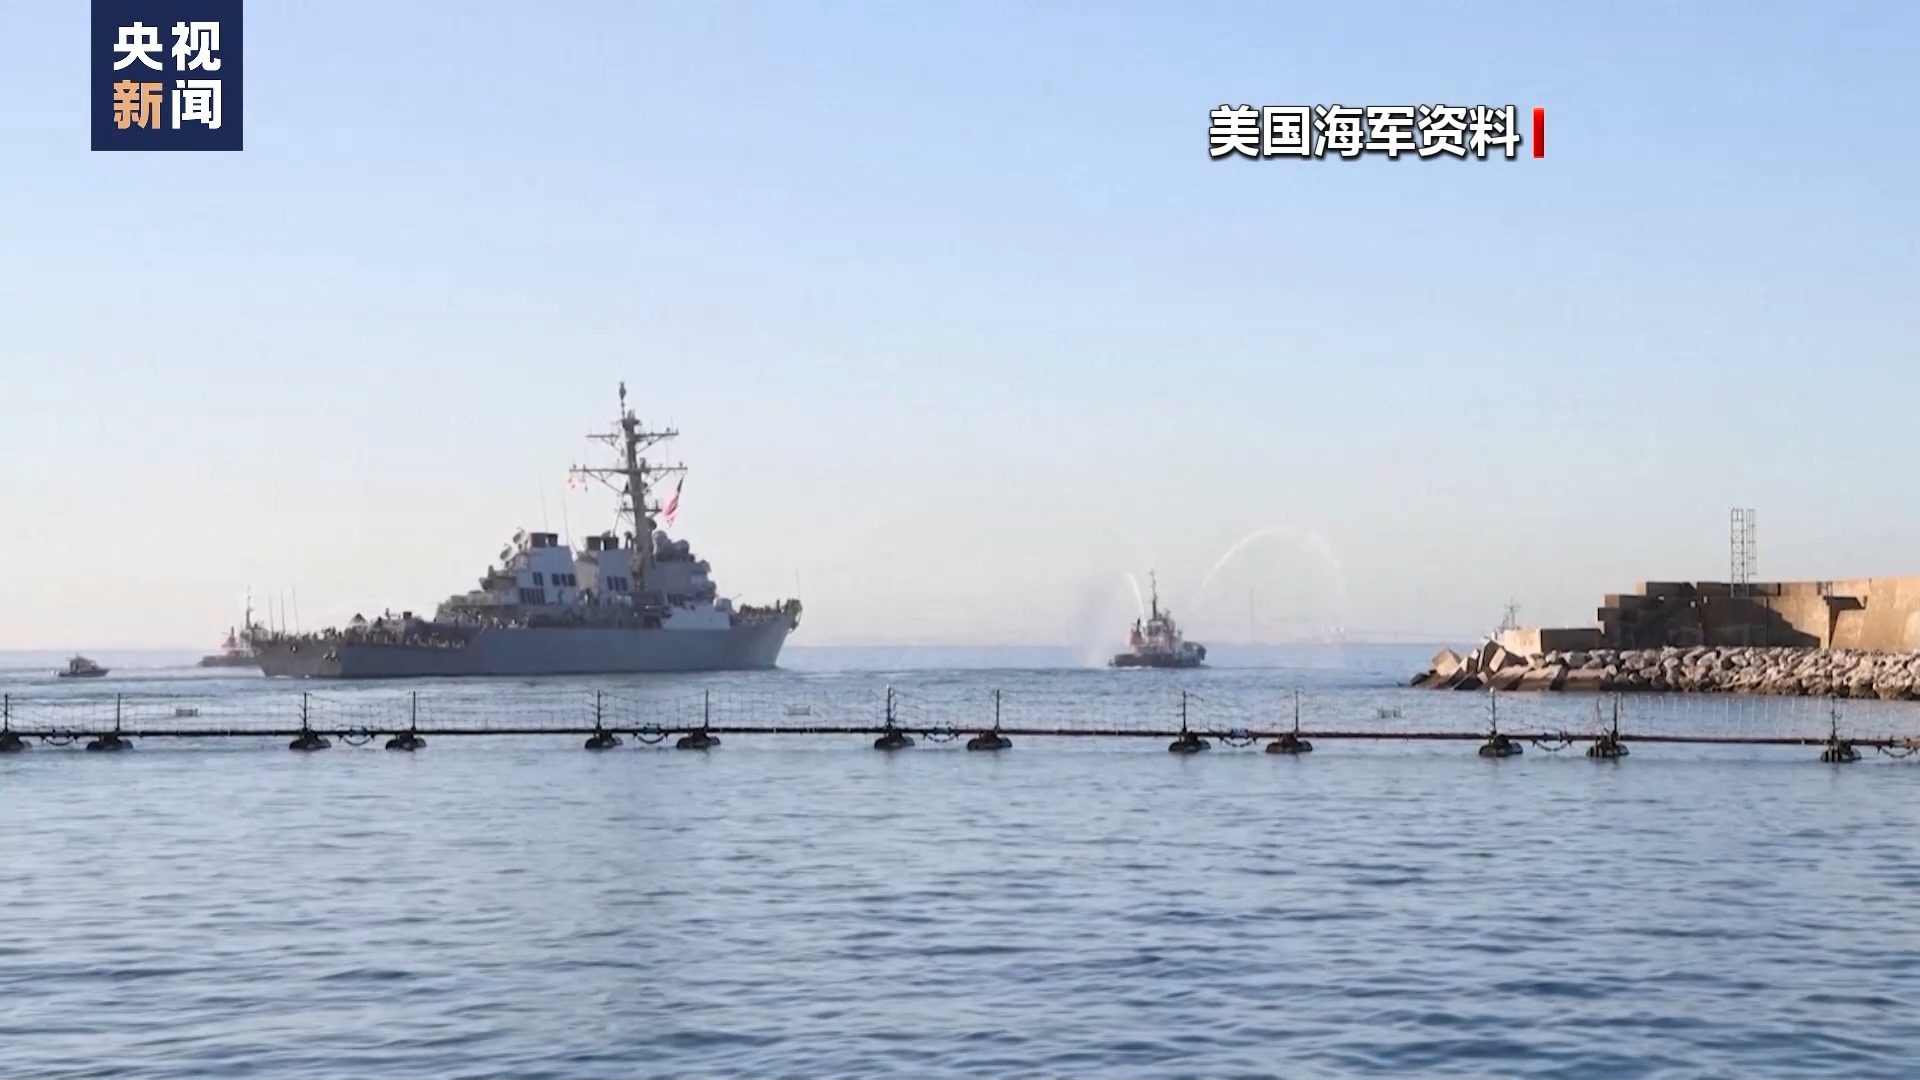 为回应美国宣布建立护航联盟 胡塞武装称将瞄准对其采取行动的国家船只